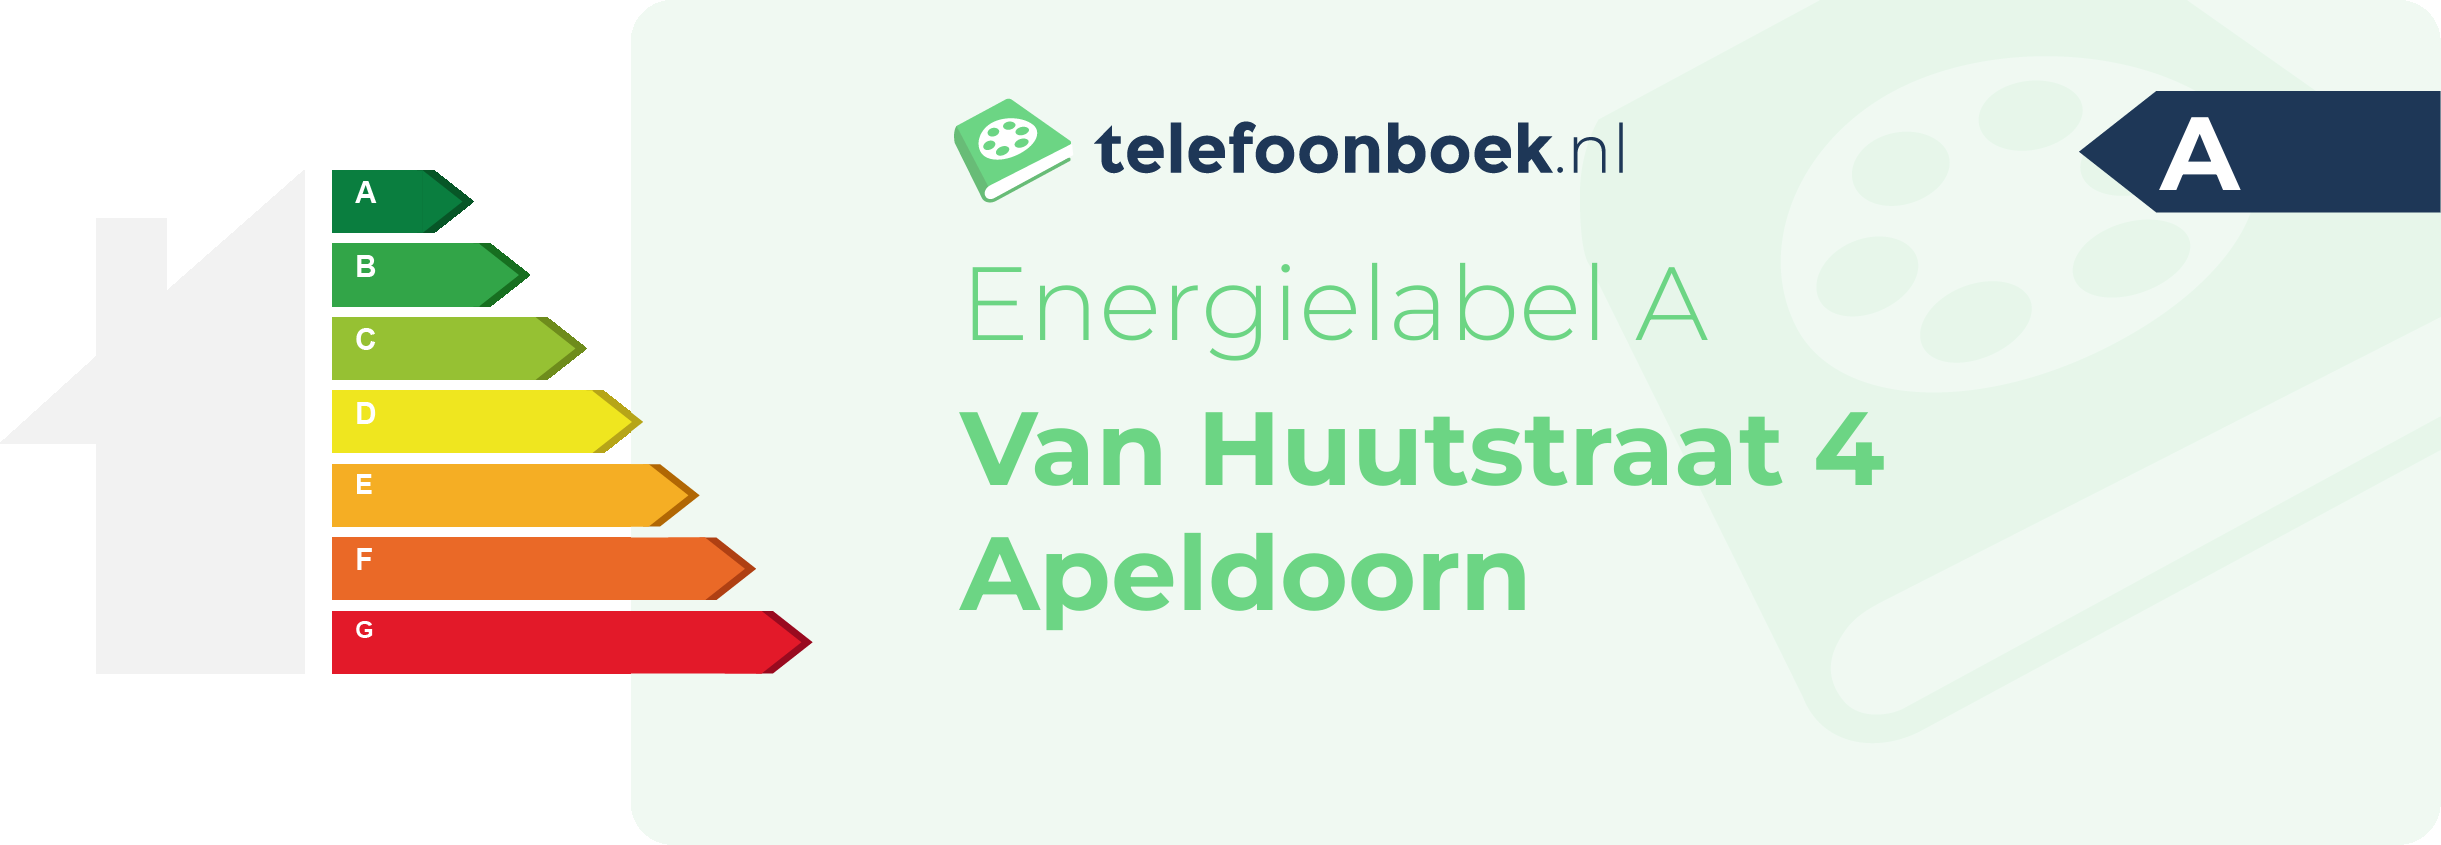 Energielabel Van Huutstraat 4 Apeldoorn